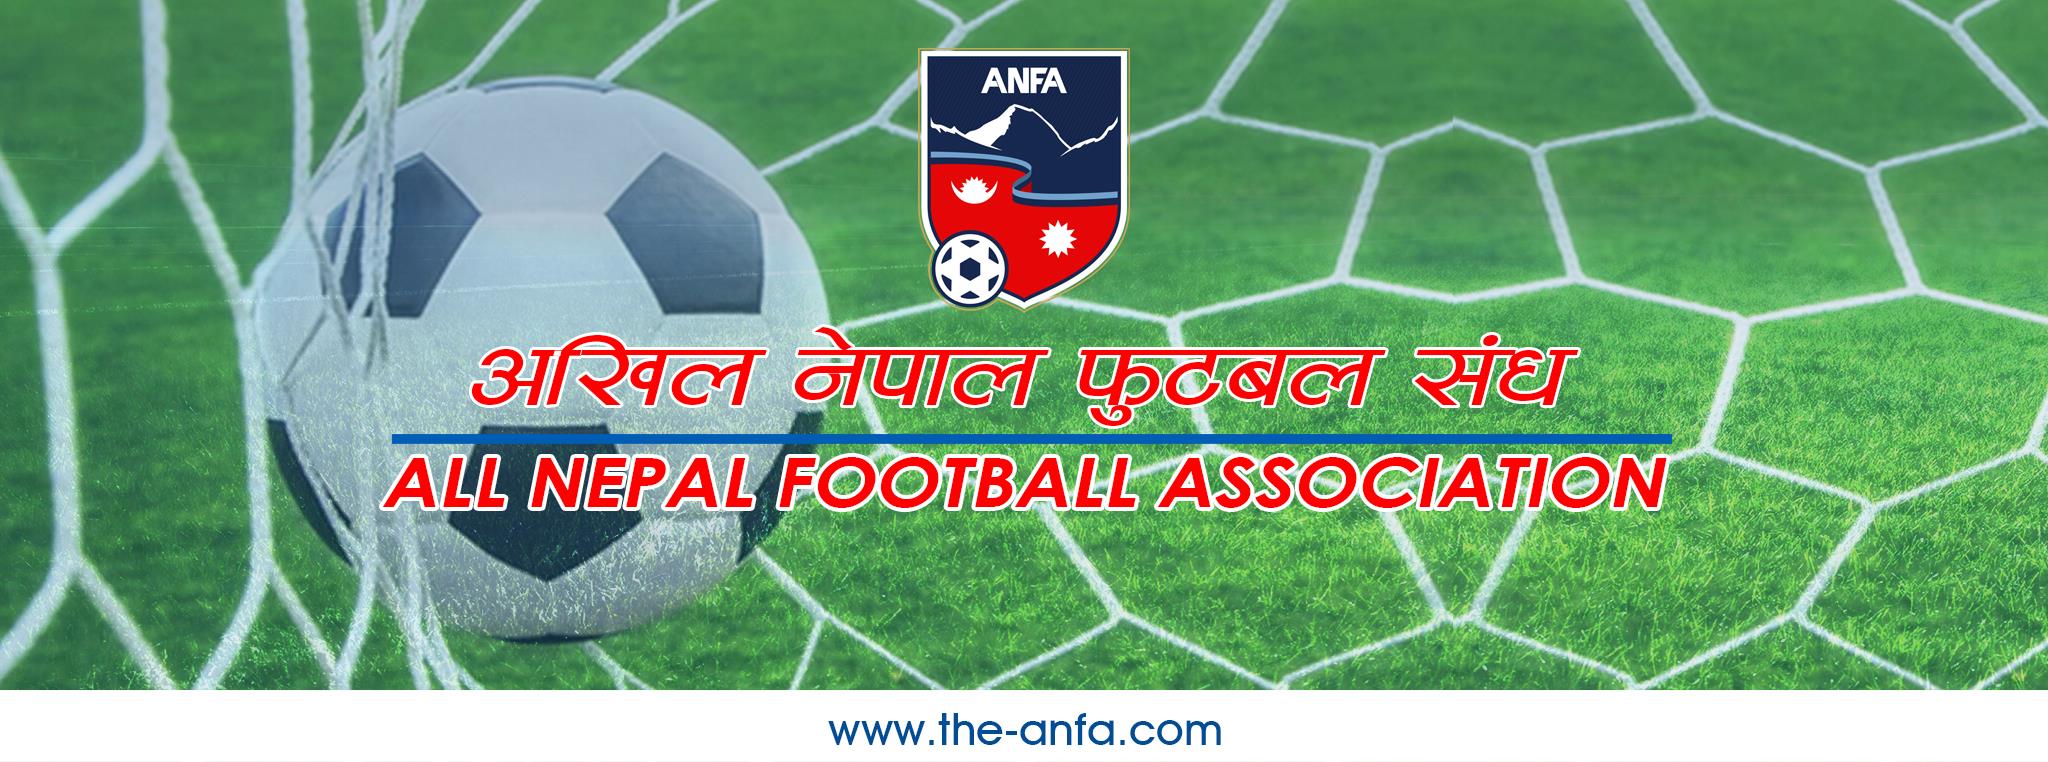 अखिल नेपाल फुटबल सङ्घको अध्यक्षमा शेर्पाको उम्मेदवारी घोषणा